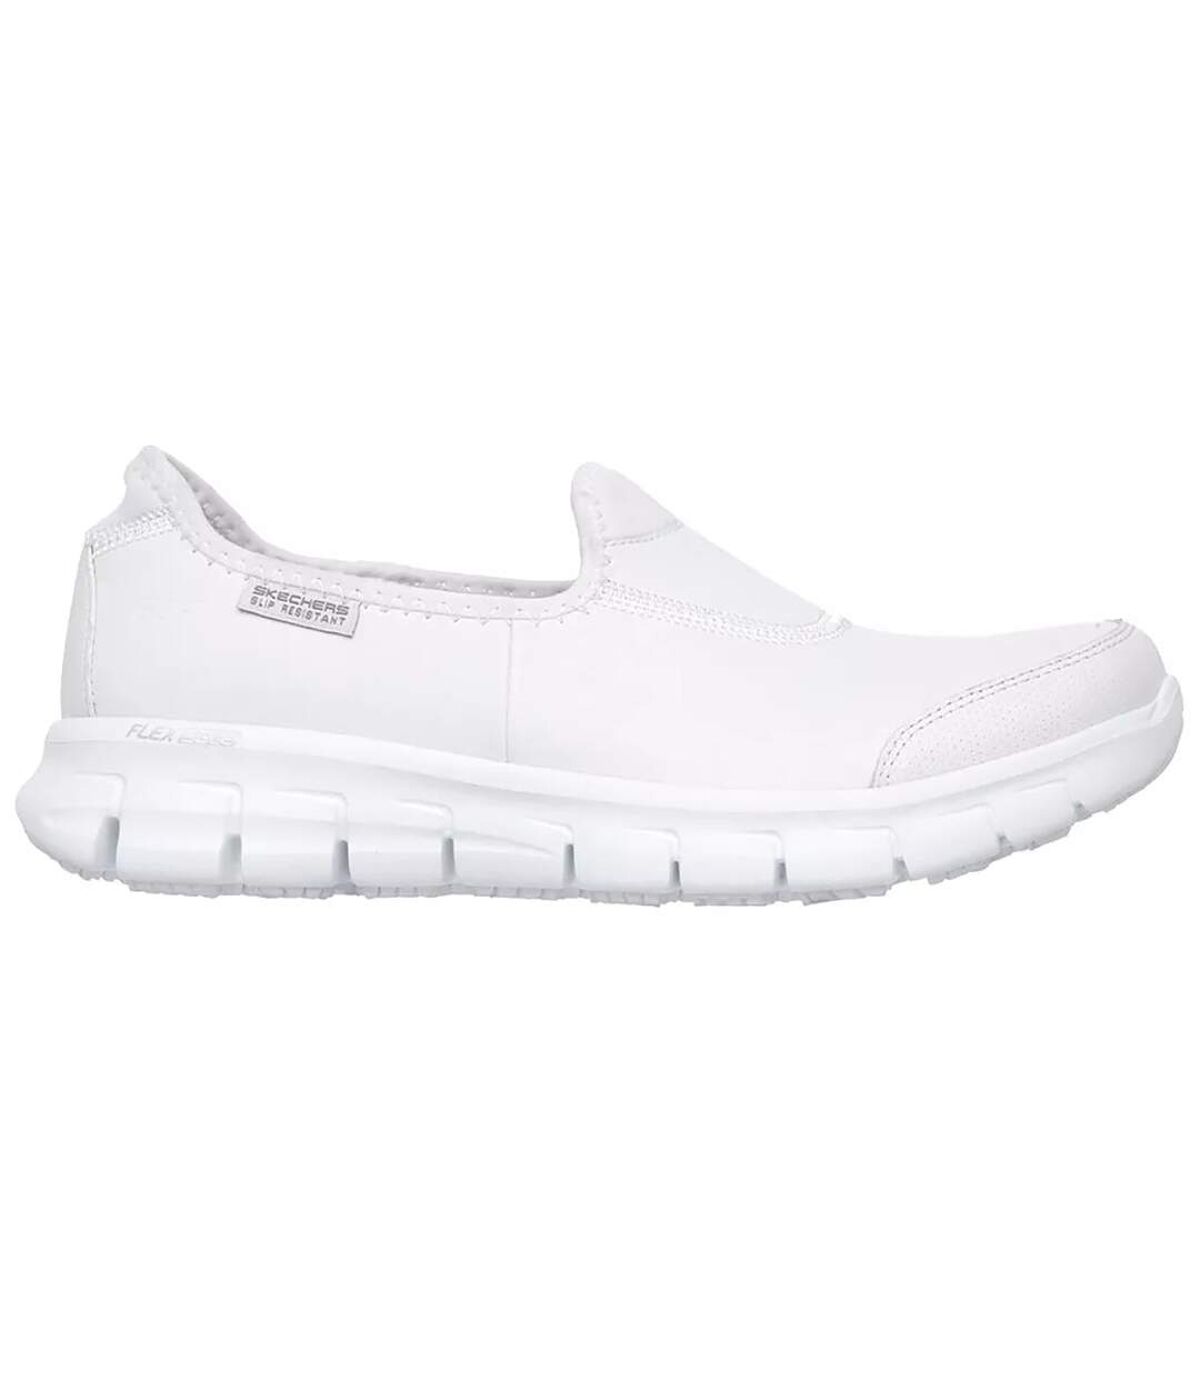 Skechers Womens Sure Track Slip Resistant Slip On Work Shoe (White) - UTFS6004